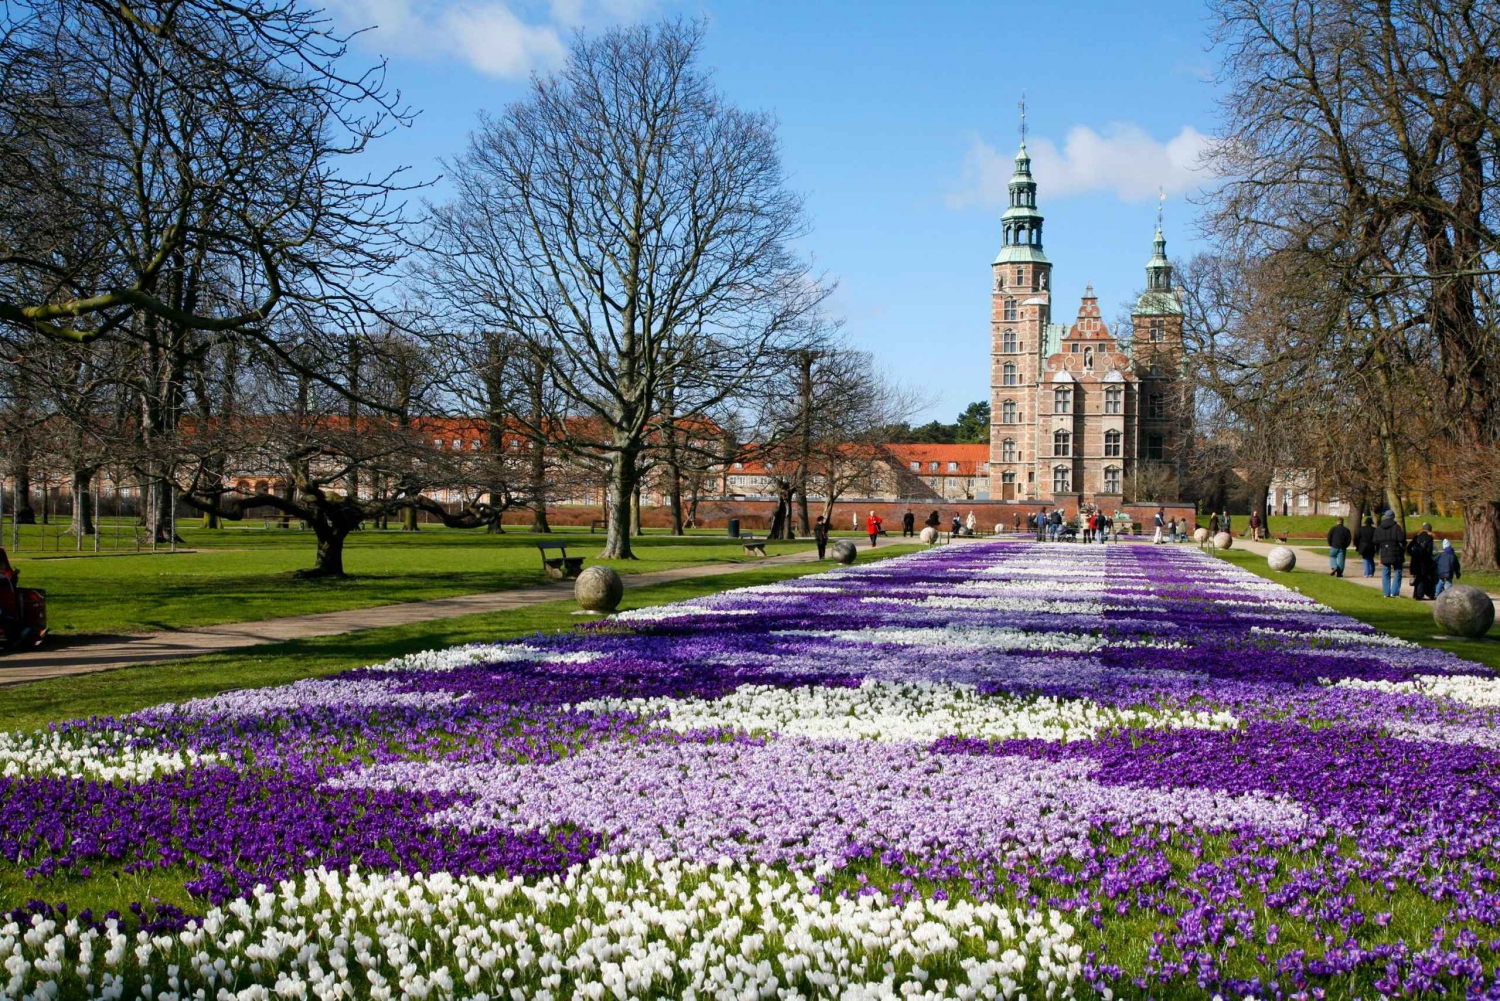 Kopenhagen: stadstour van 3 uur met ticket voor kasteel Rosenborg